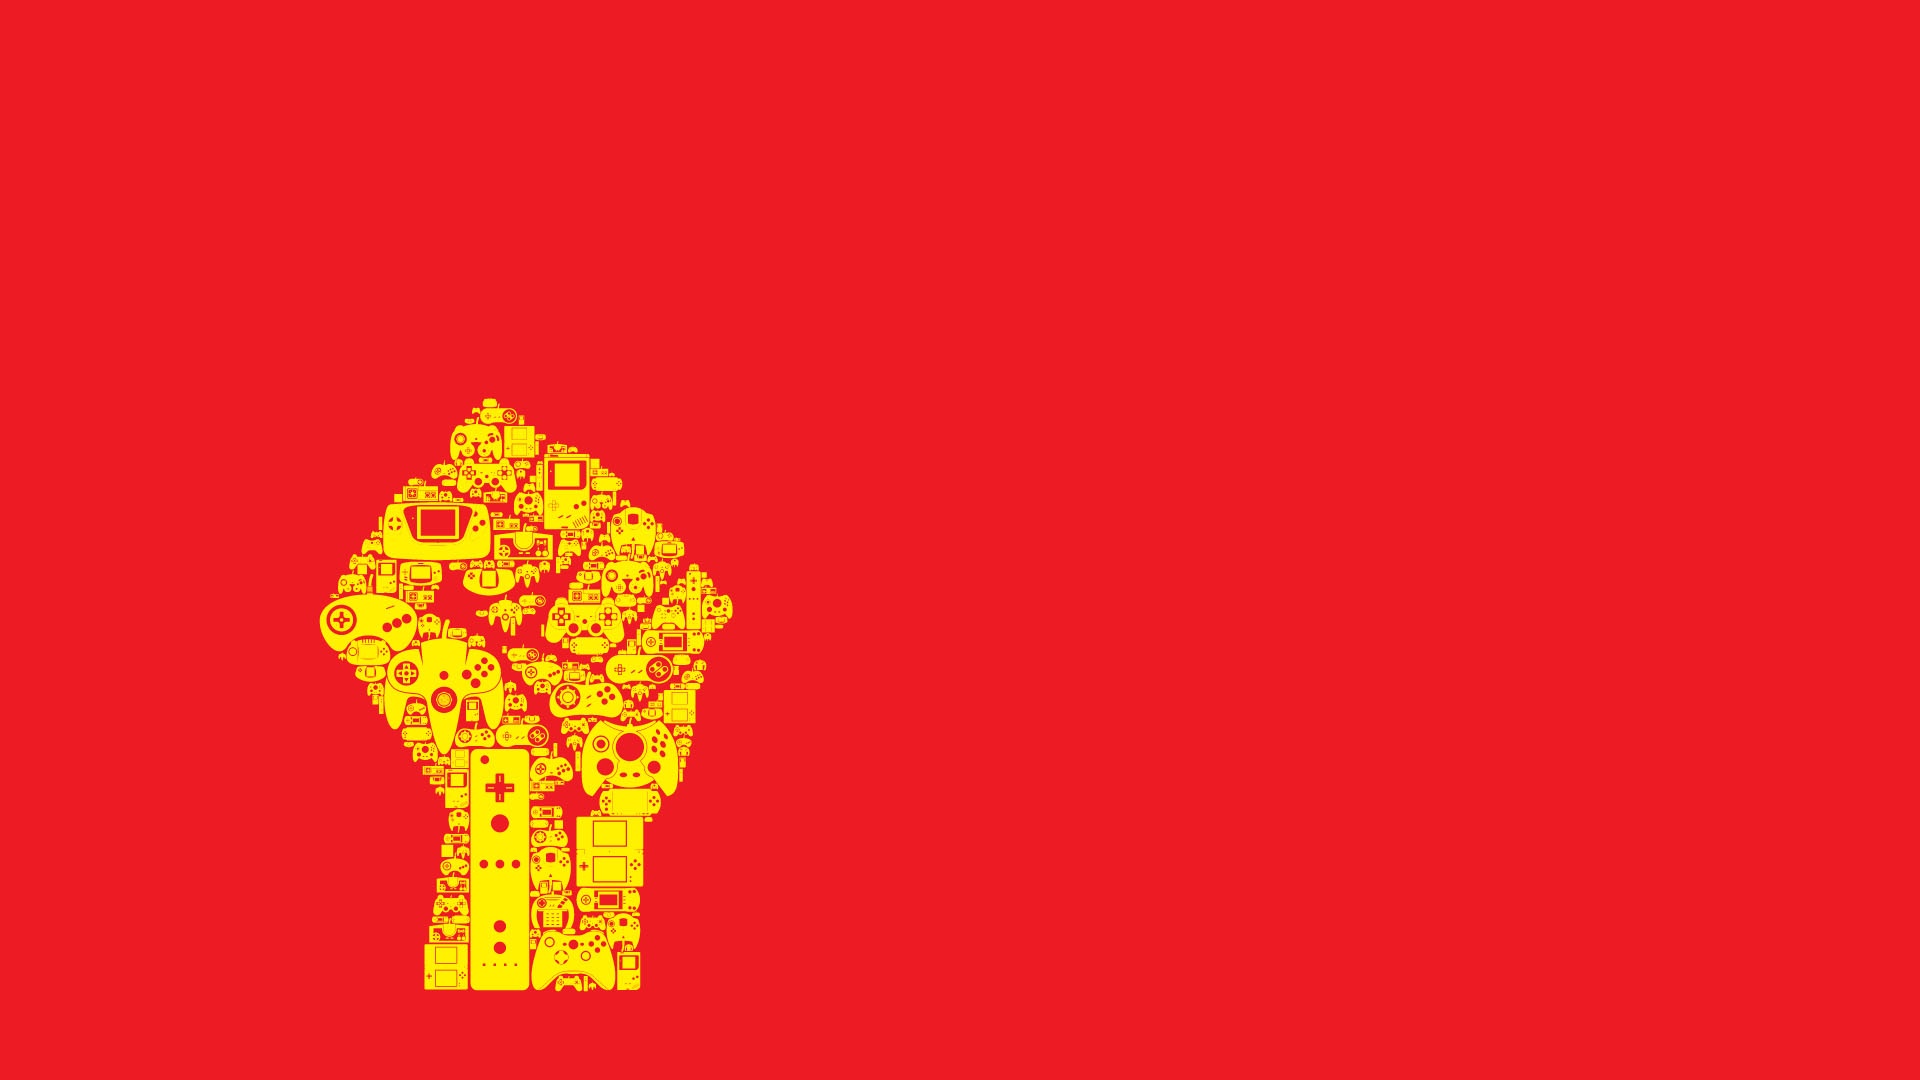 76+] Socialist Wallpapers - WallpaperSafari